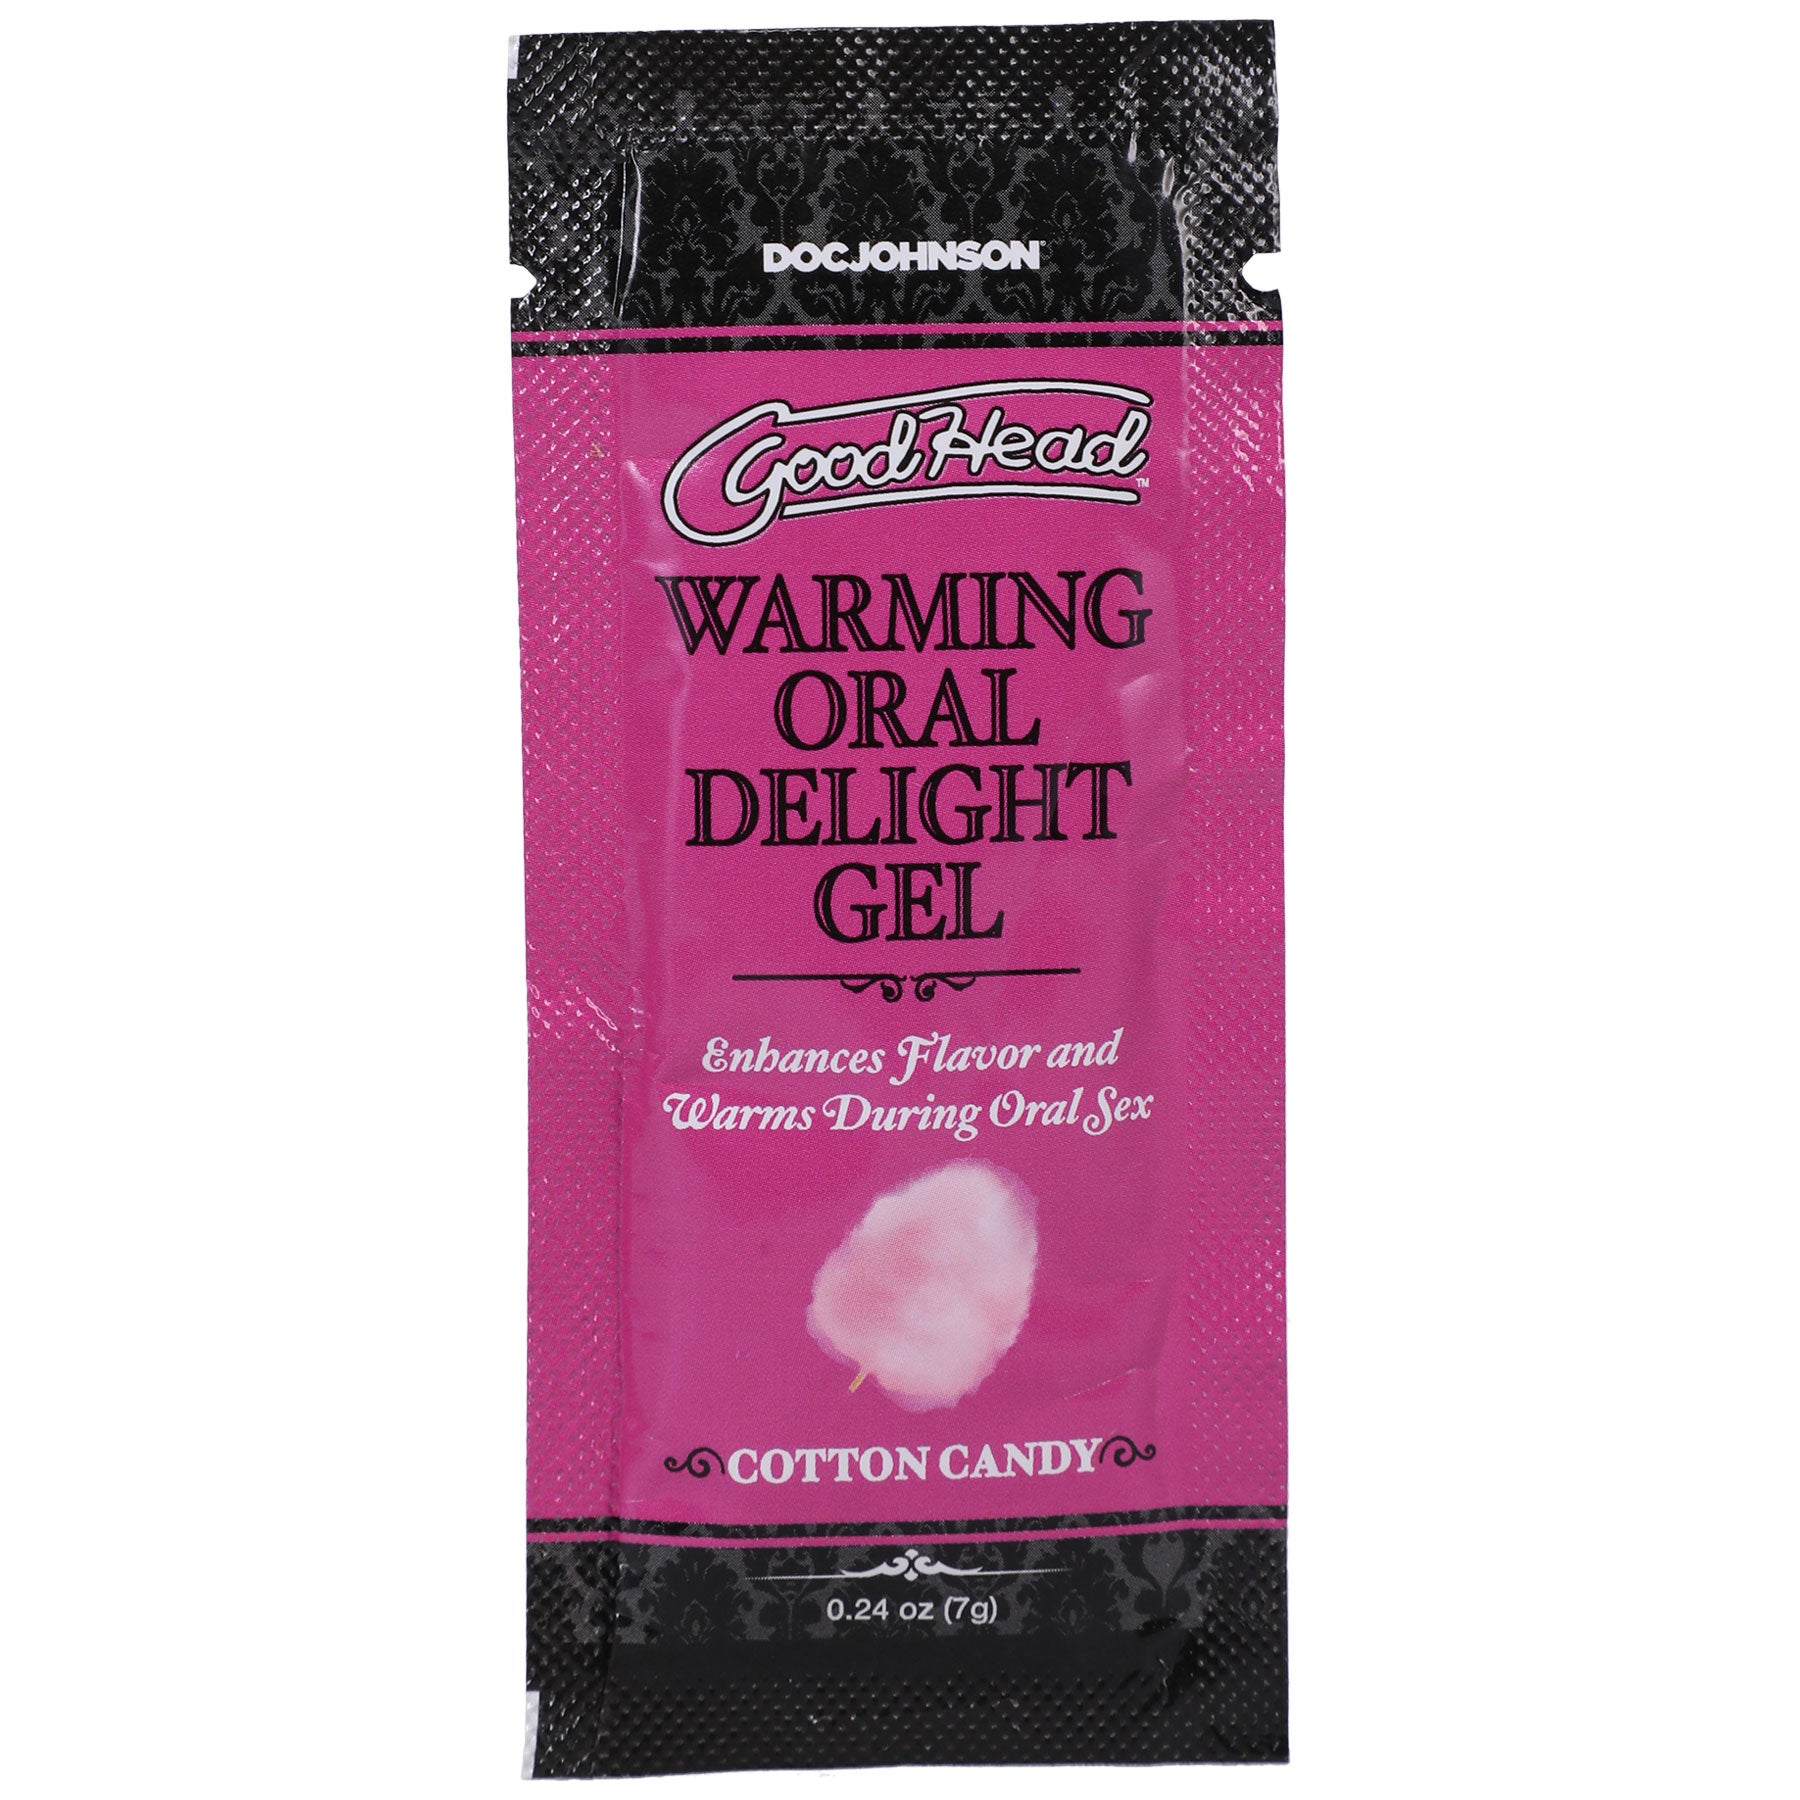 Goodhead - Warming Oral Delight Gel - Cotton Candy - 0.24 Oz-0